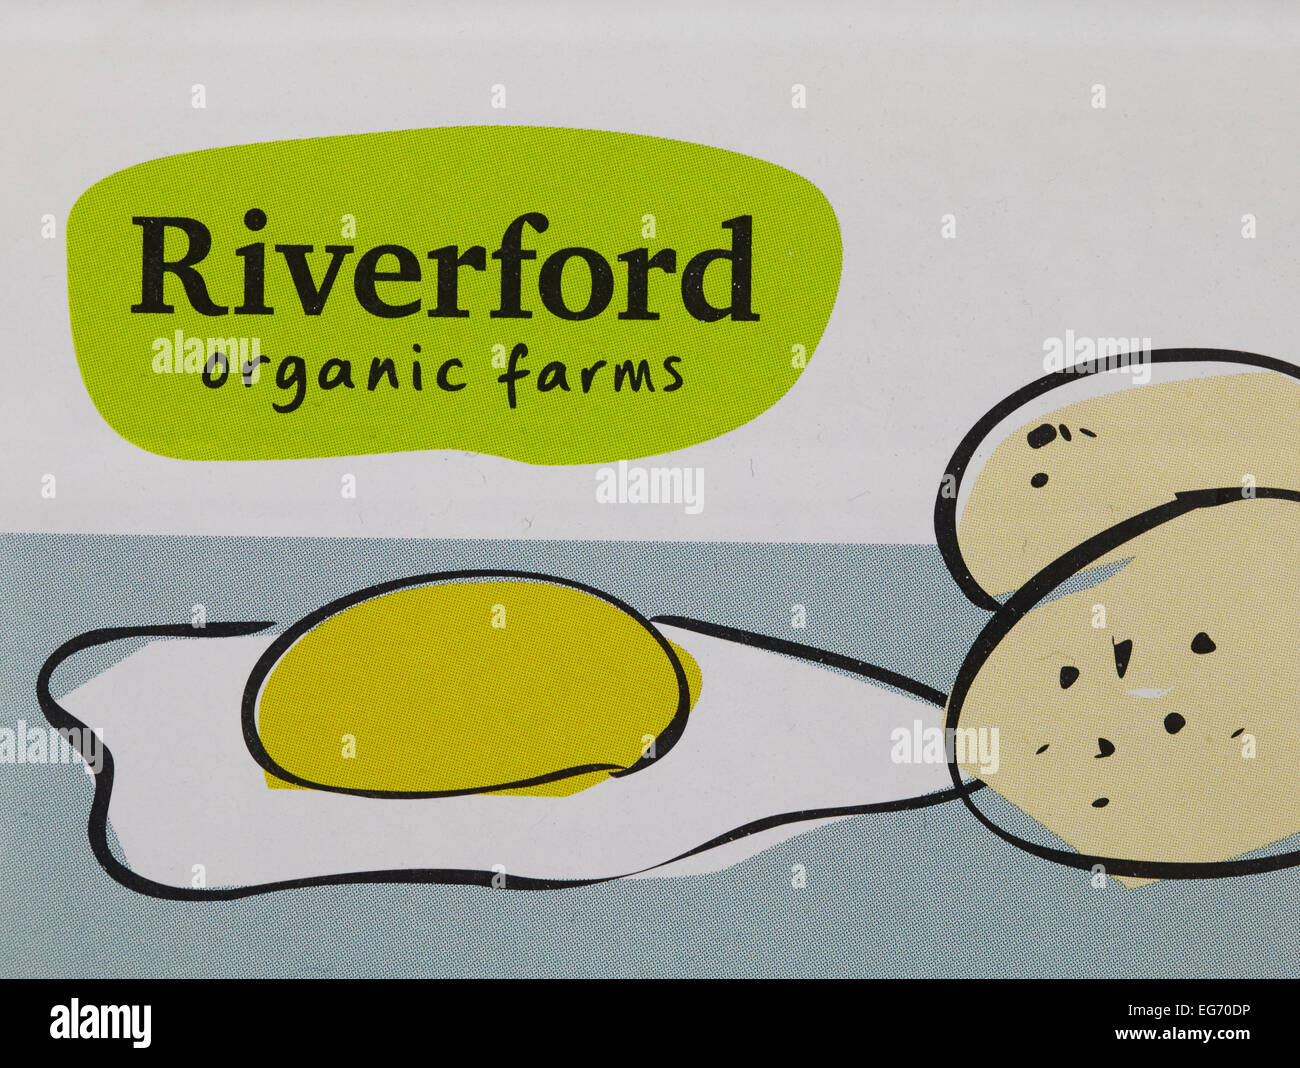 Los alimentos orgánicos Riverford Foto de stock